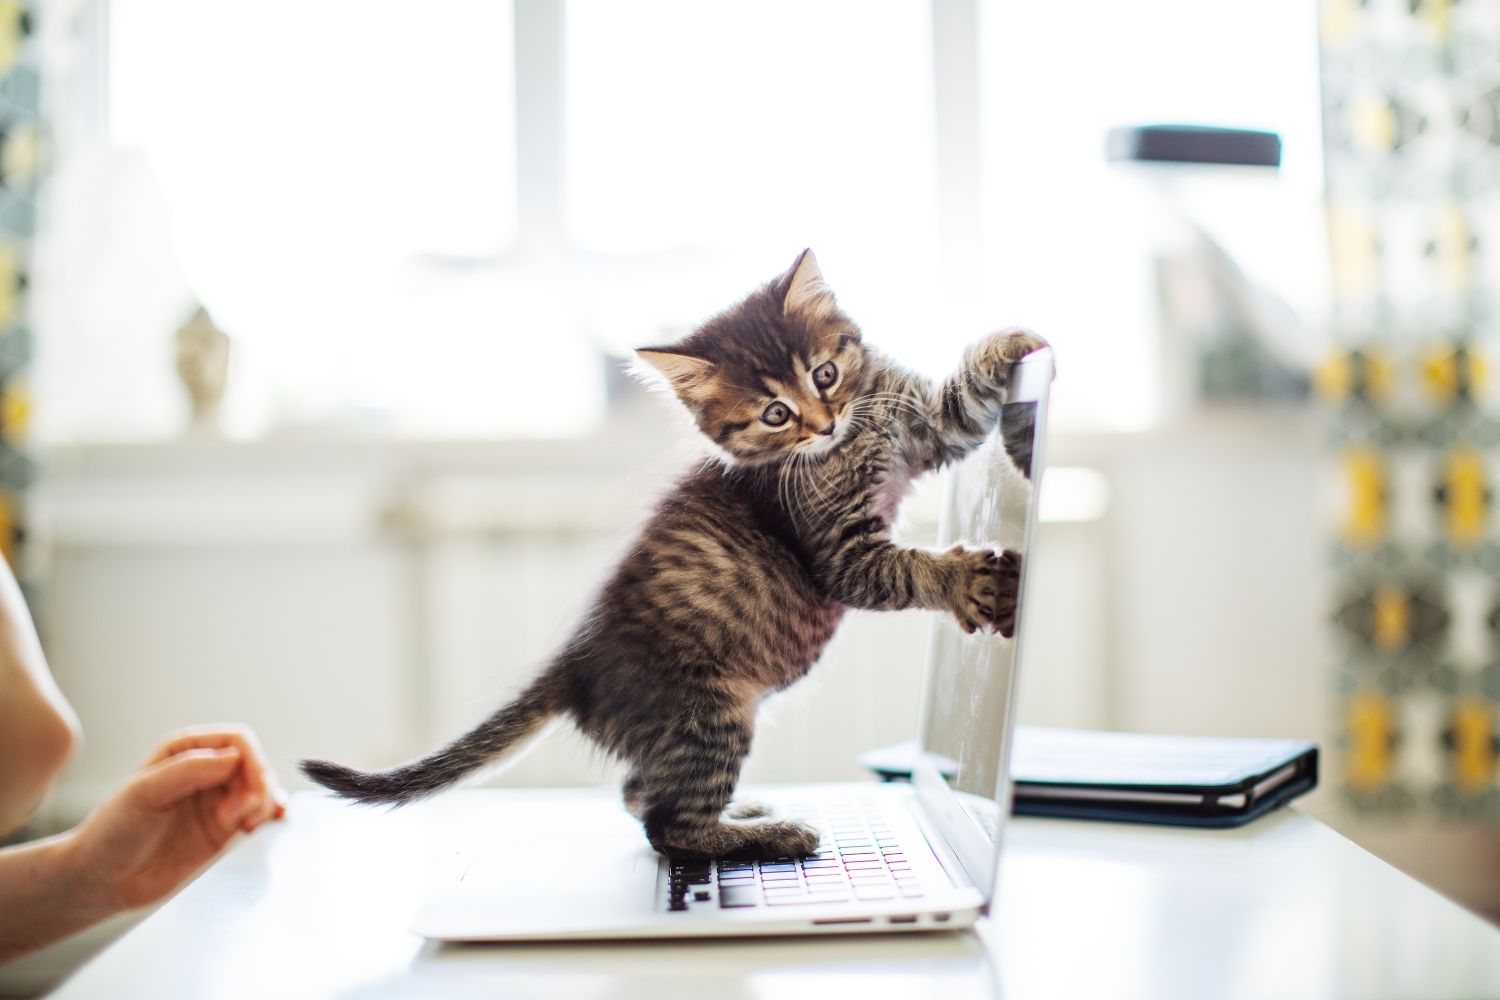 Kitten playing on laptop screen.